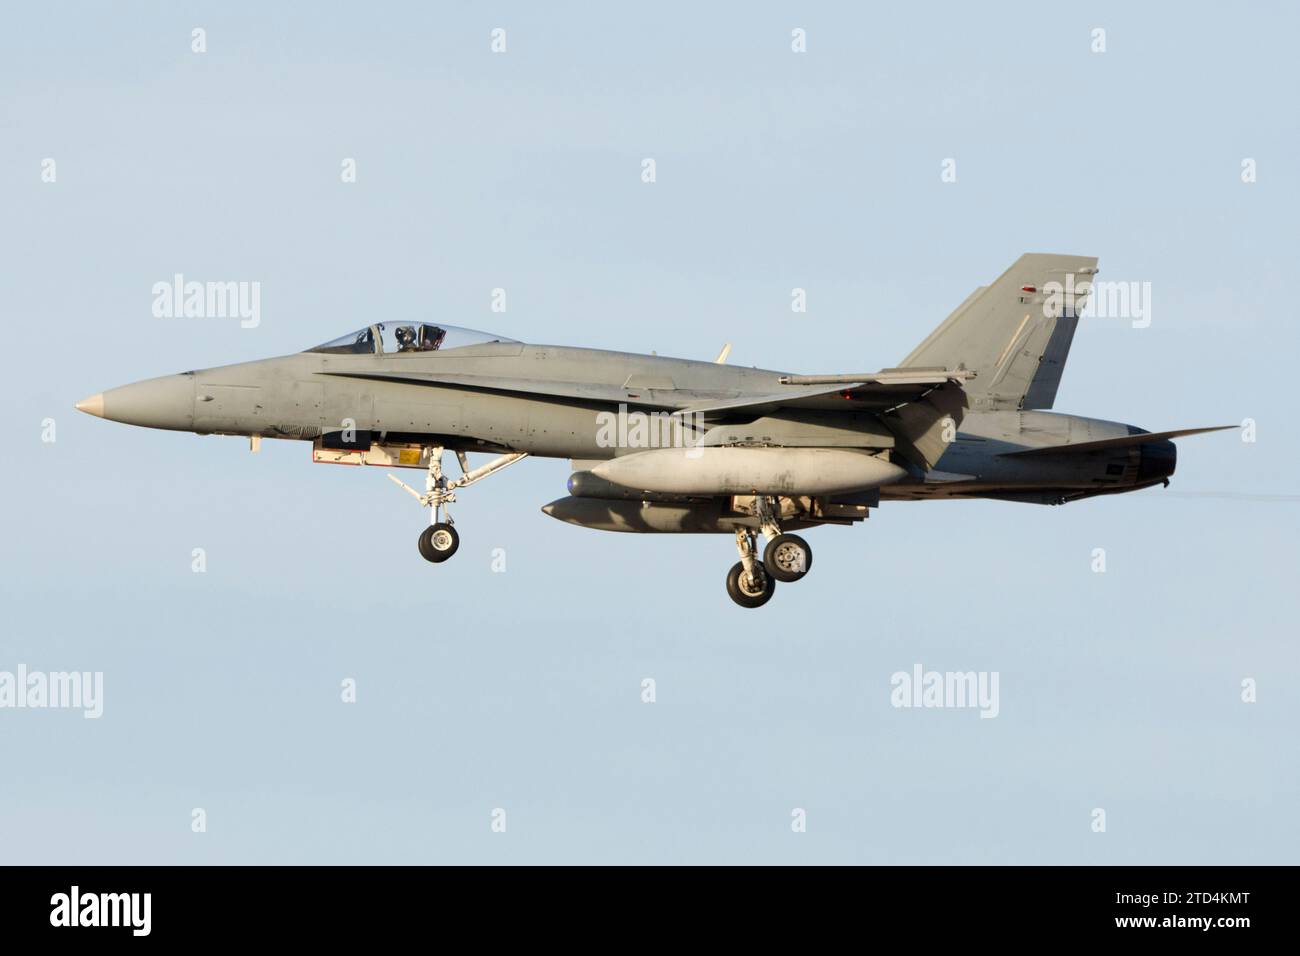 Avion de chasse F-18 atterrissant au coucher du soleil Banque D'Images